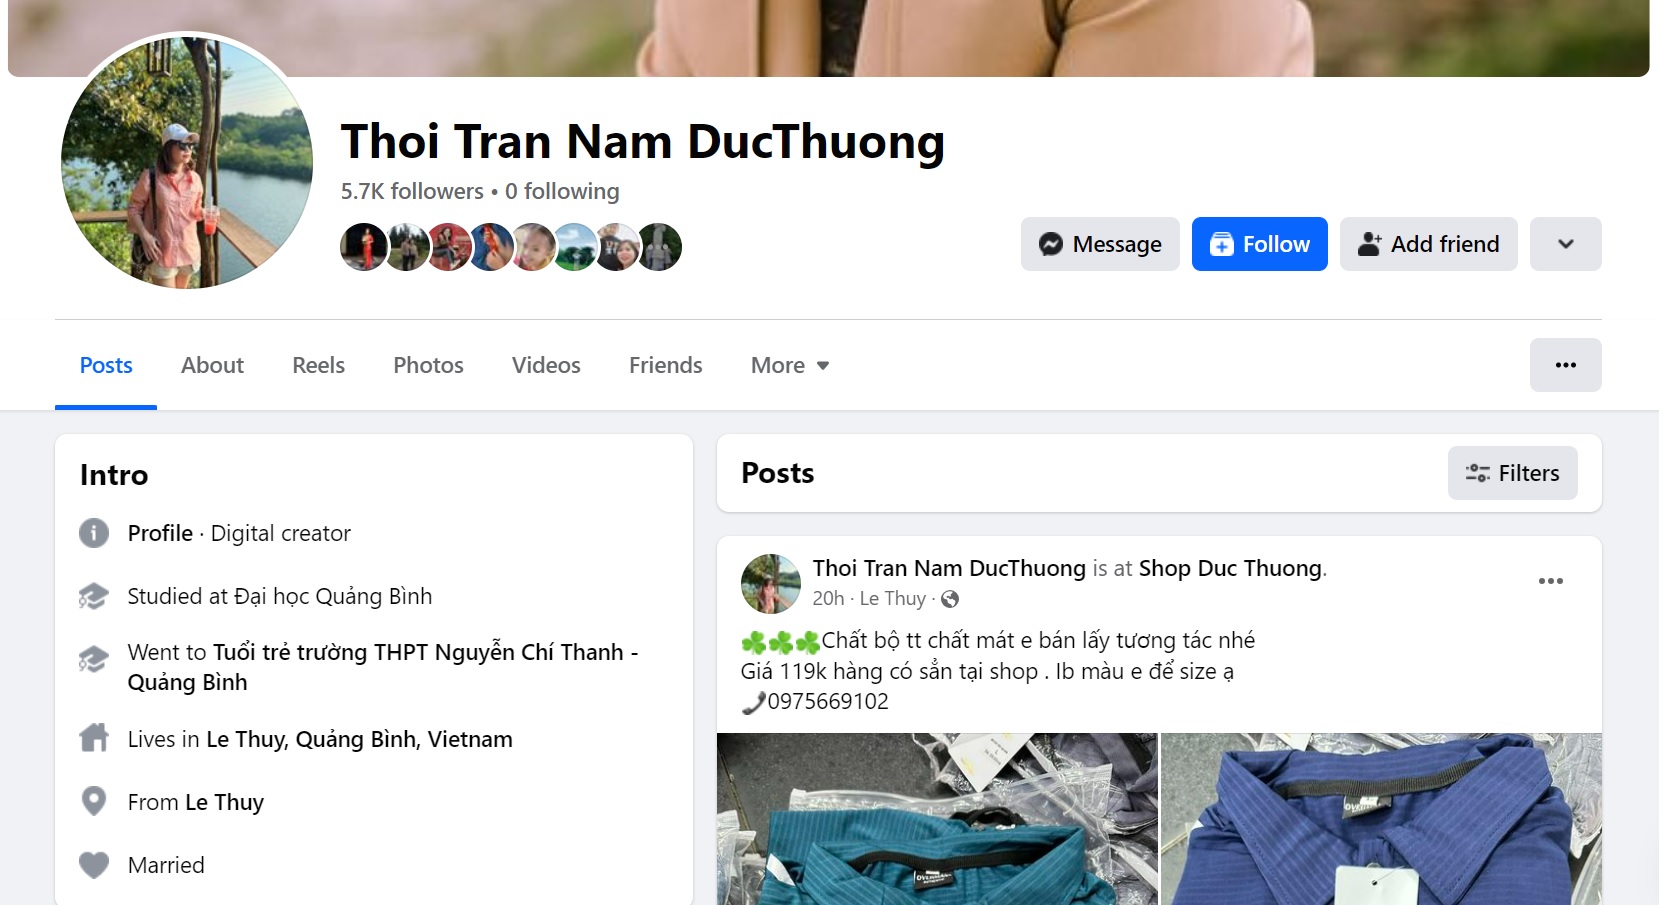 Hình ảnh trang Facebook “Thoi Tran Nam Duc Thuong” có buôn bán hàng hóa có dấu hiệu giả mạo nhãn hiệu